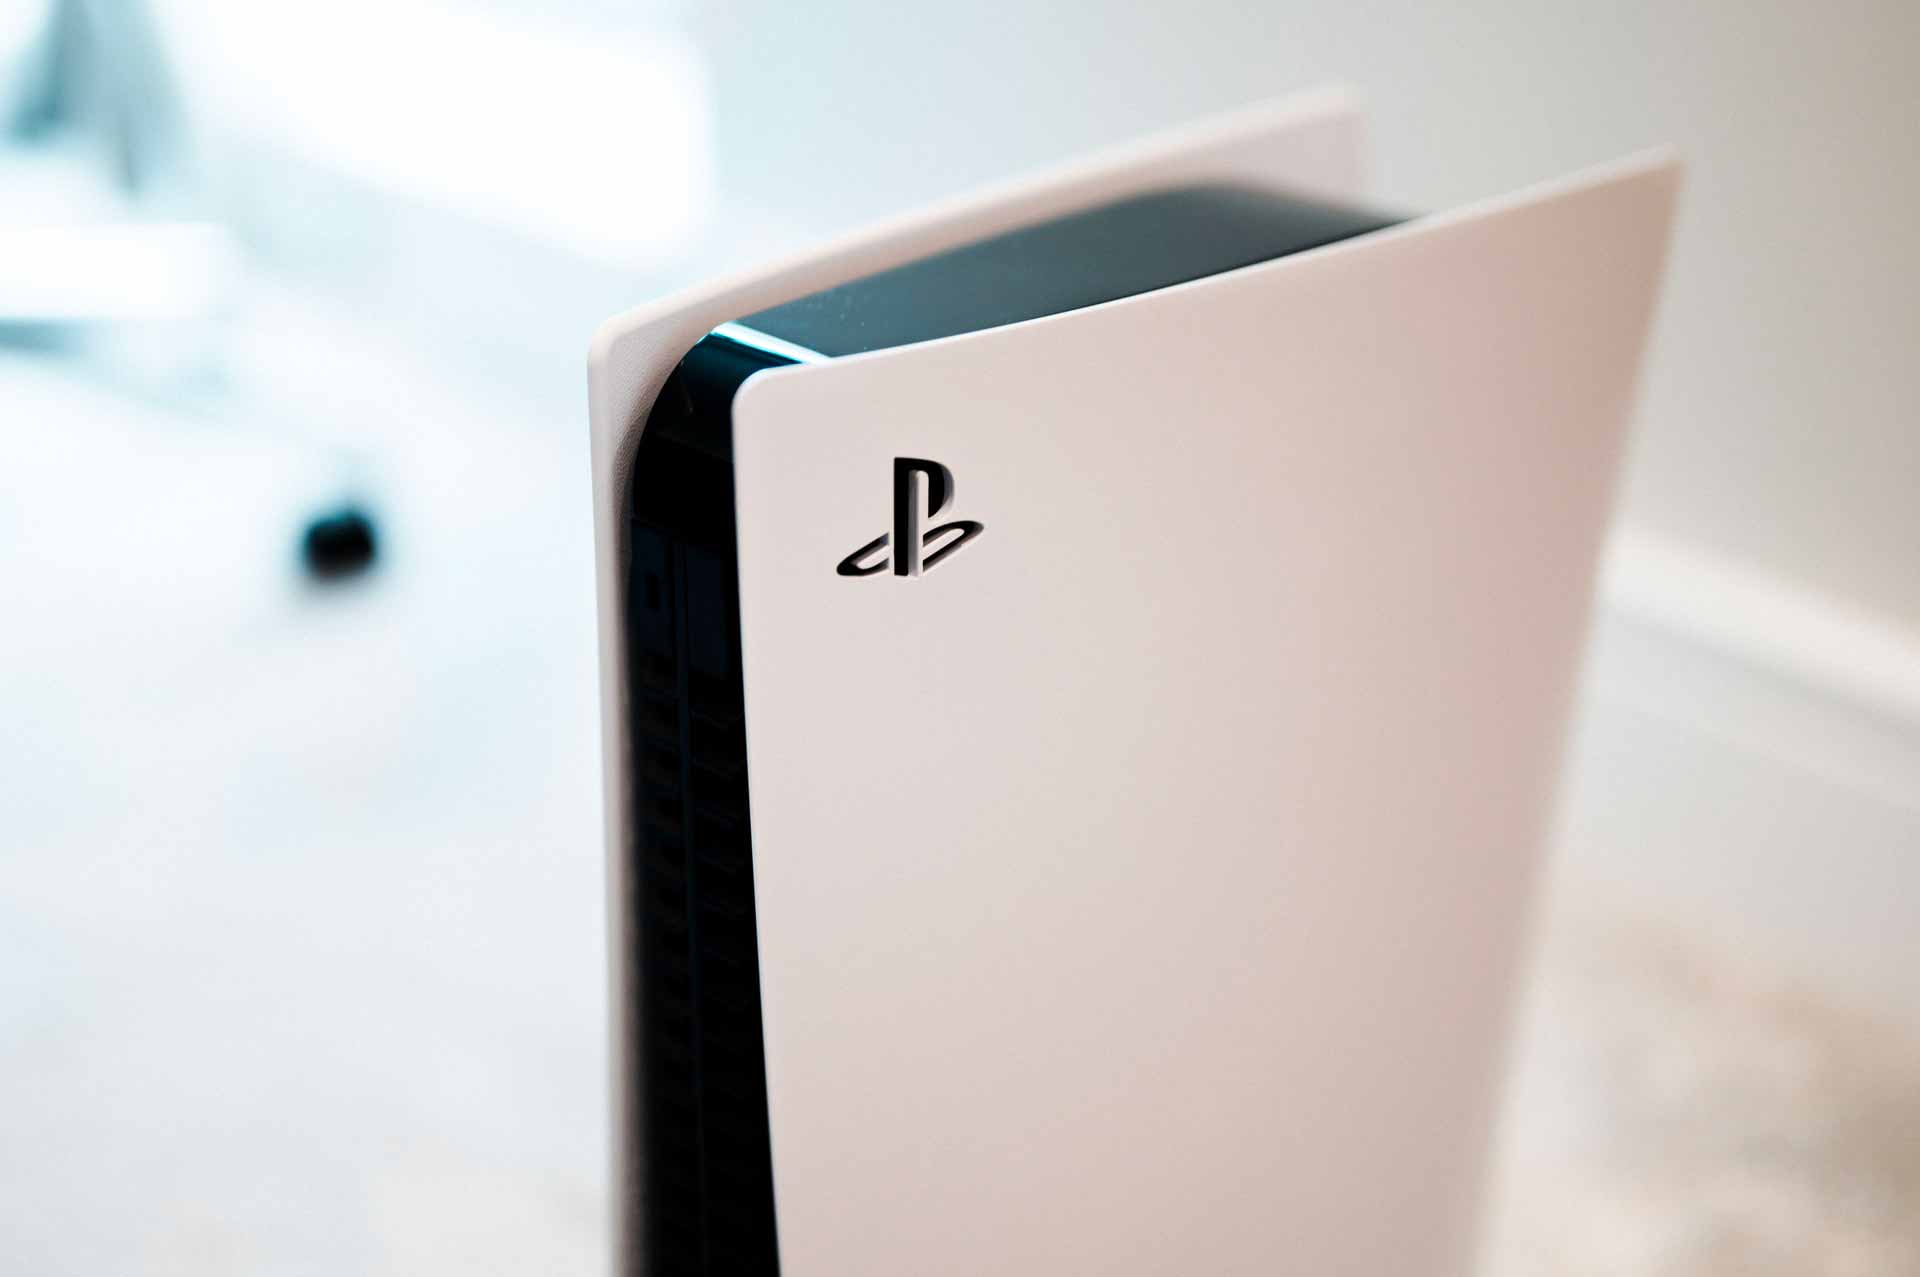 Jim Ryan veut que des “centaines de millions” de personnes aient accès aux titres PlayStation